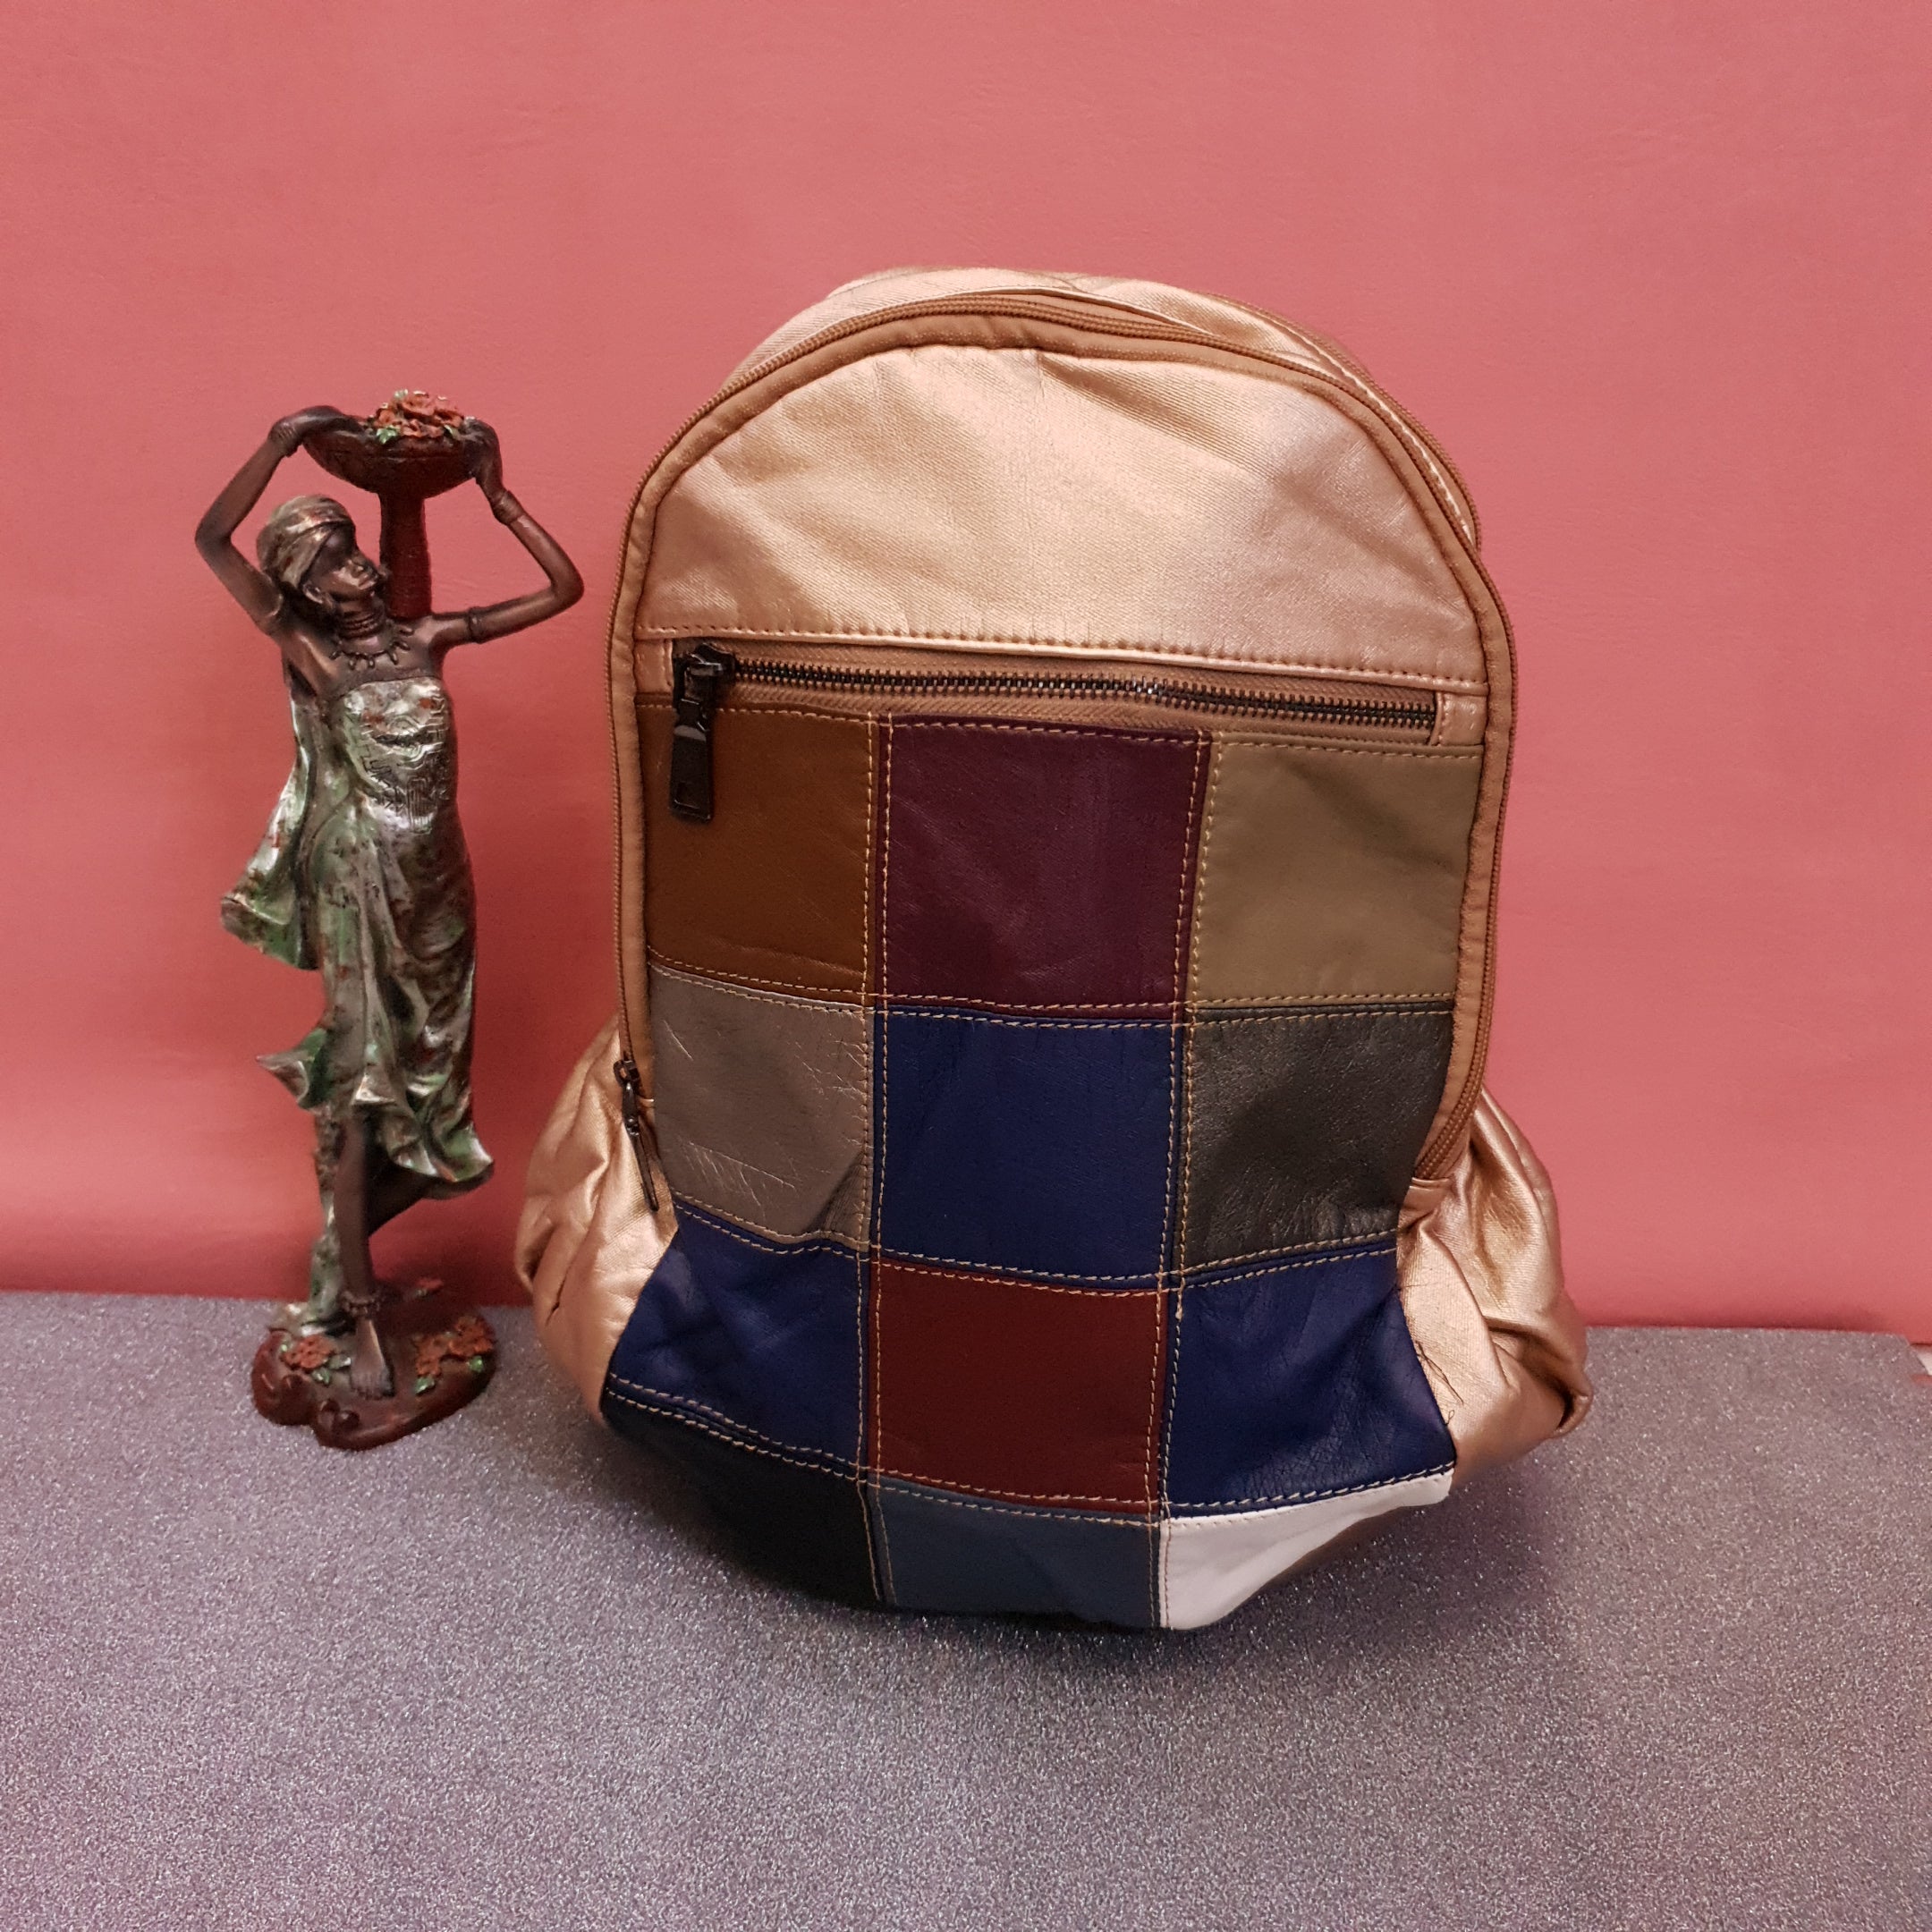 Colorful Leather Bagpacks - Maha fashions -  bagpacks